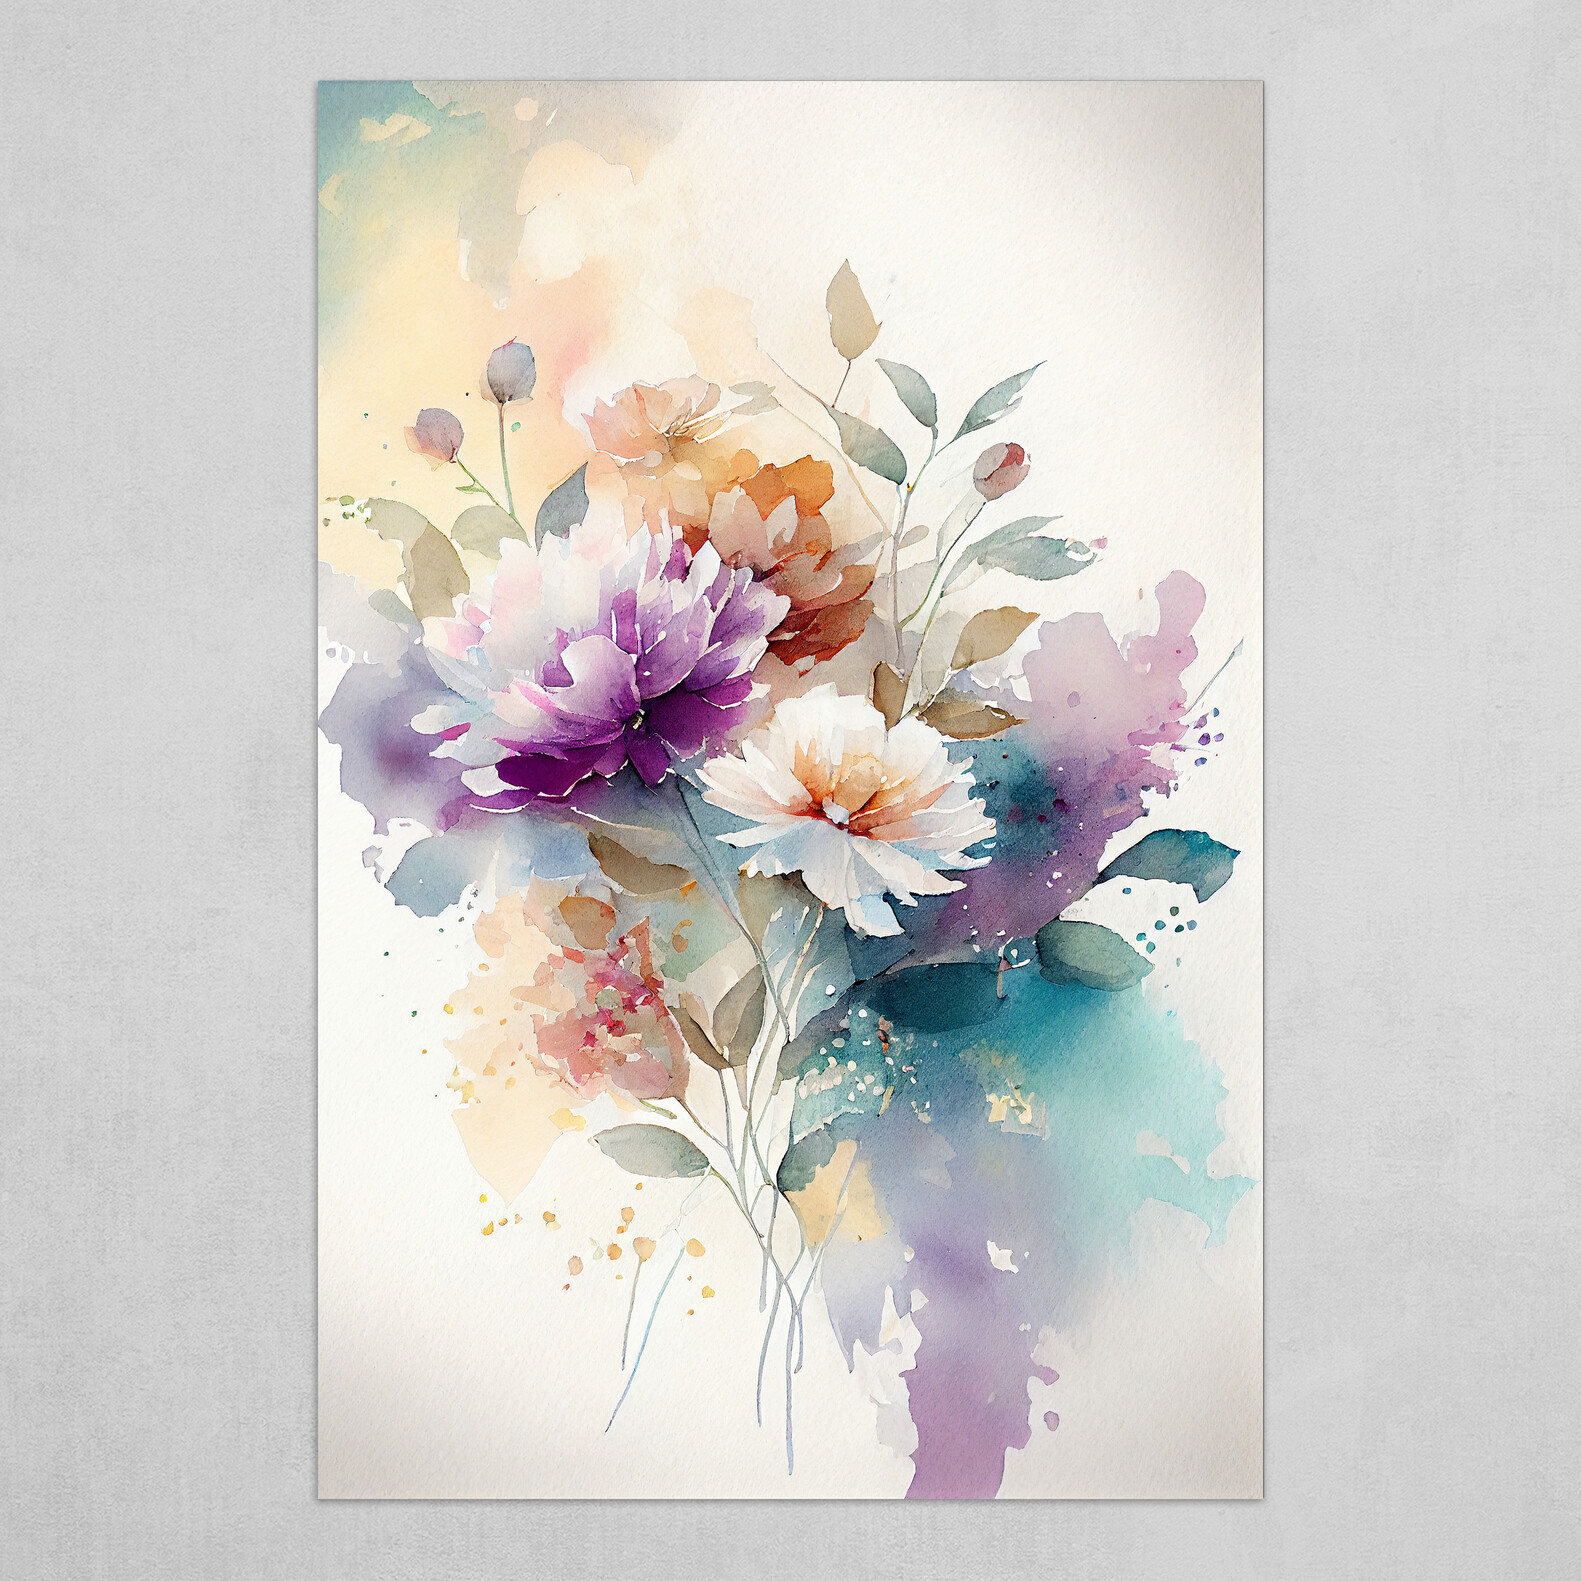 Loose watercolor flowers by Eneandine